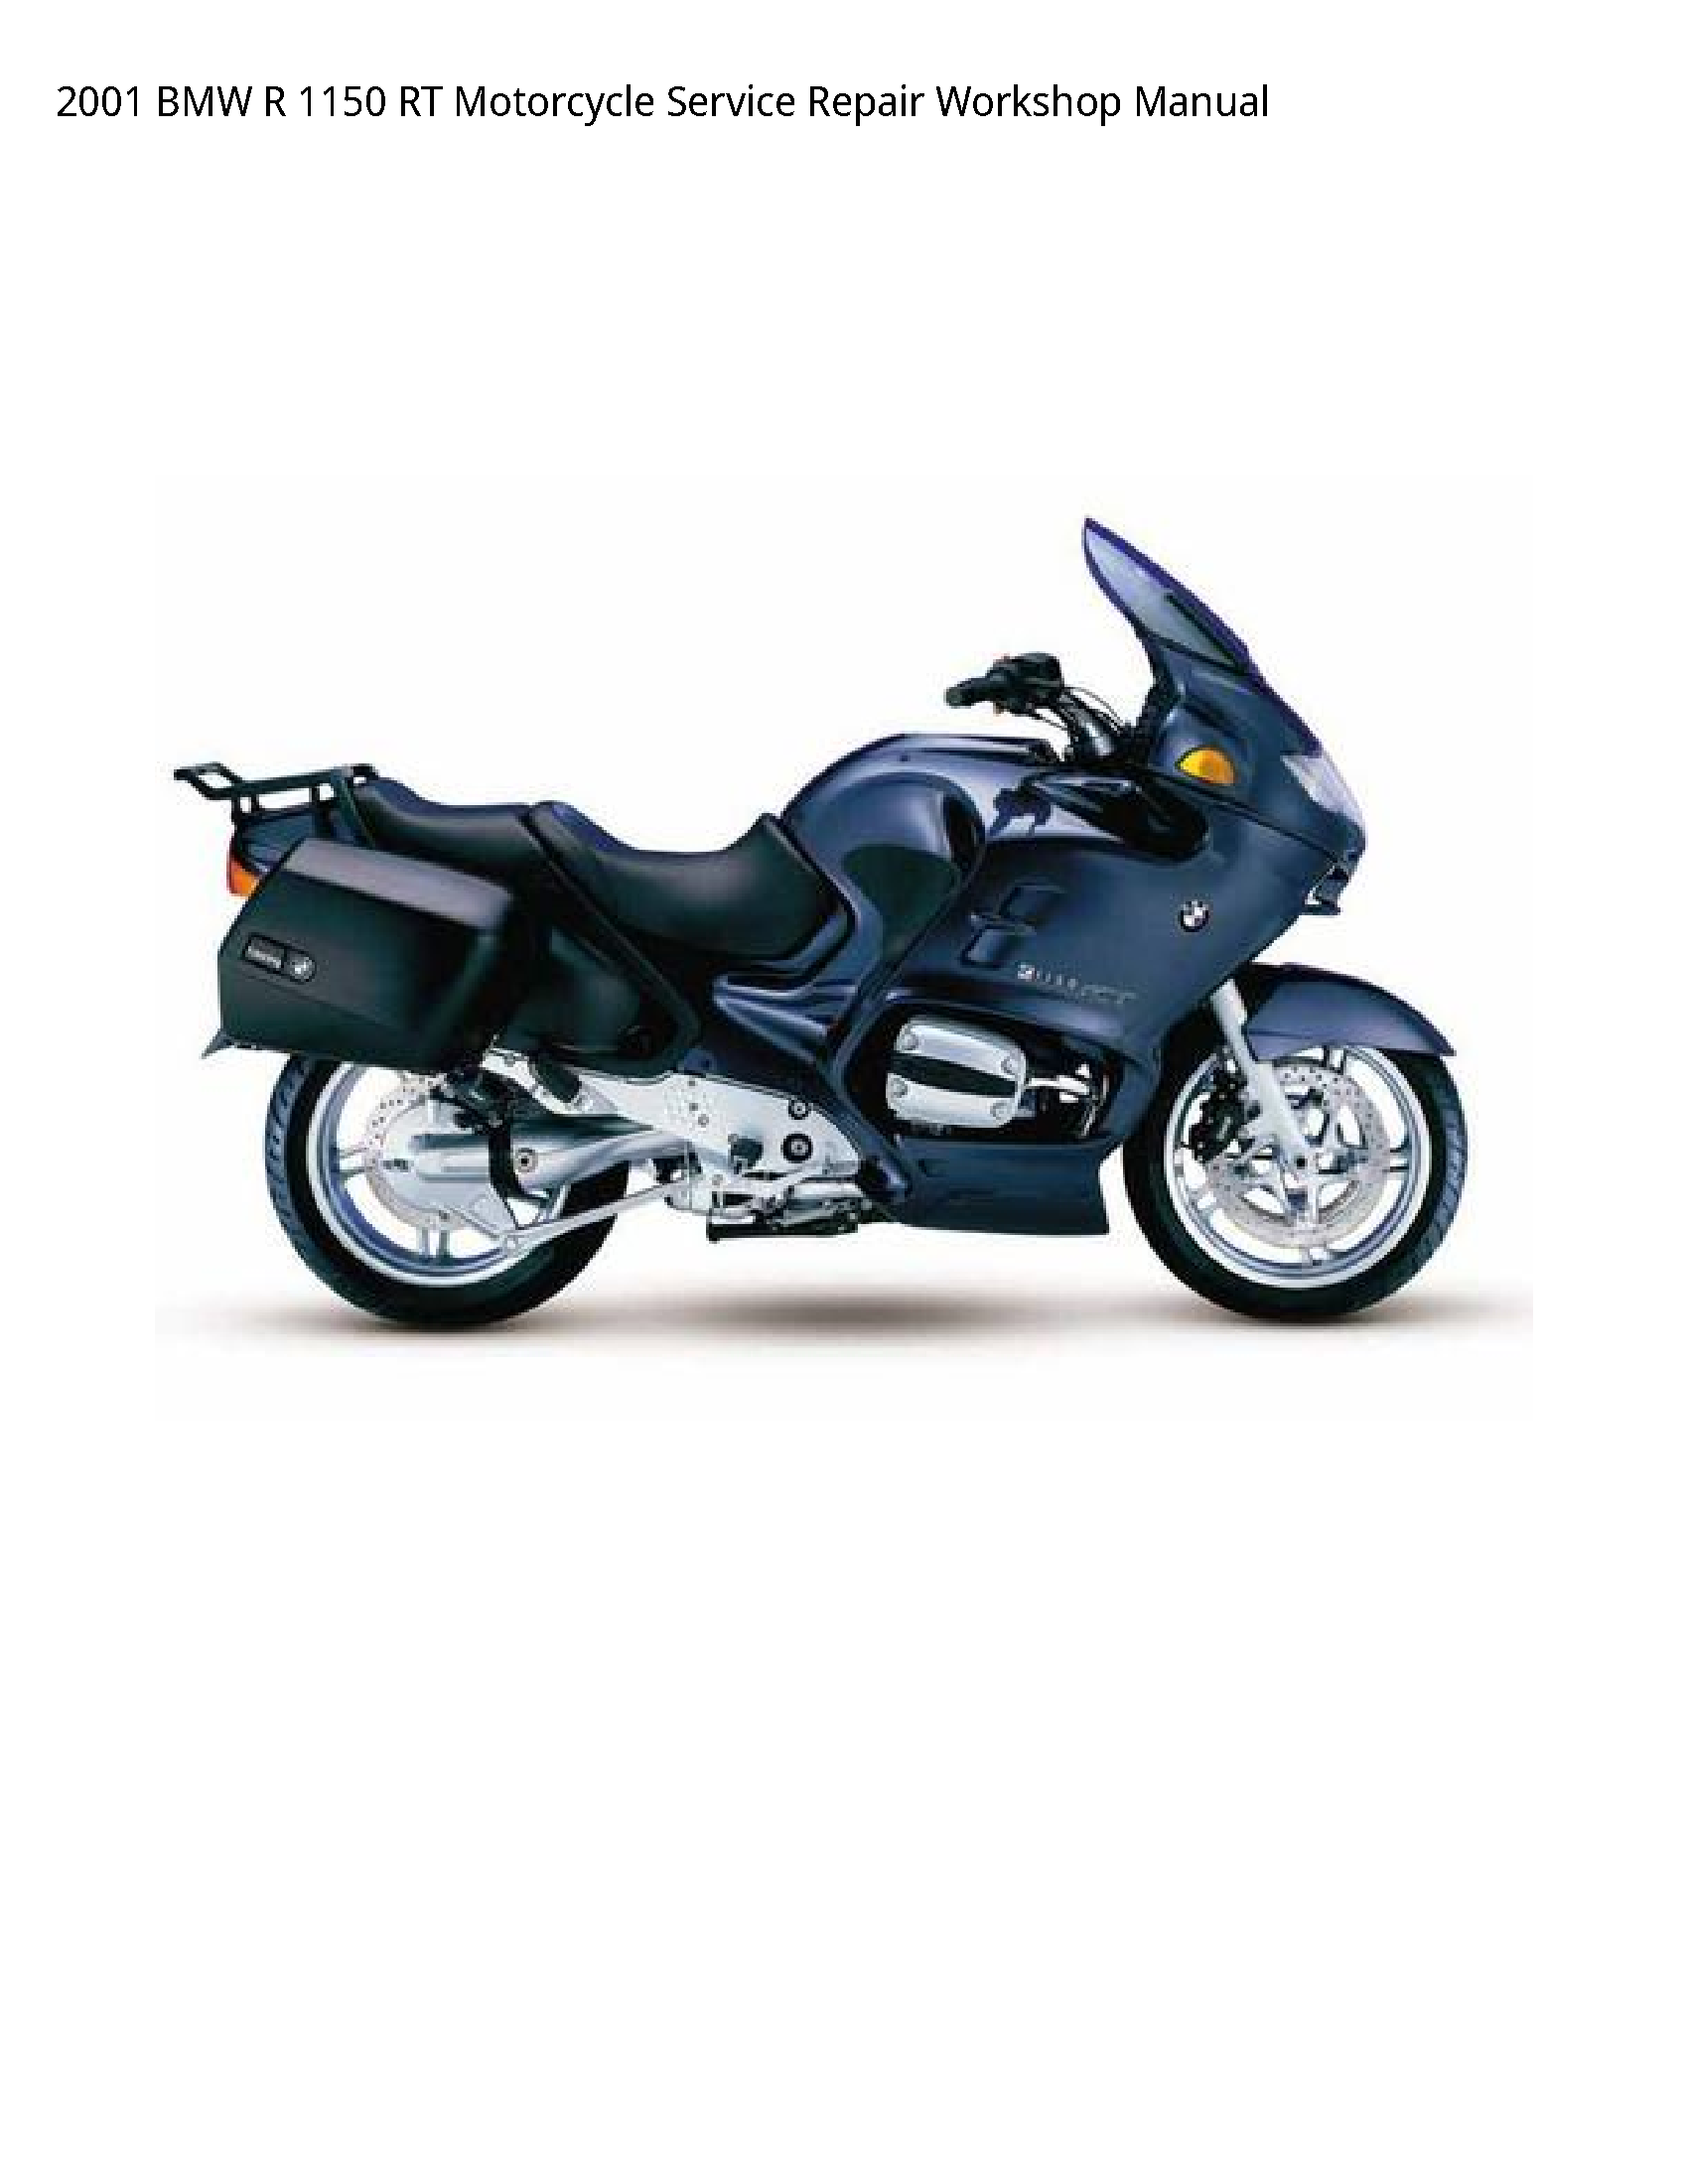 BMW 1150 RT Motorcycle manual